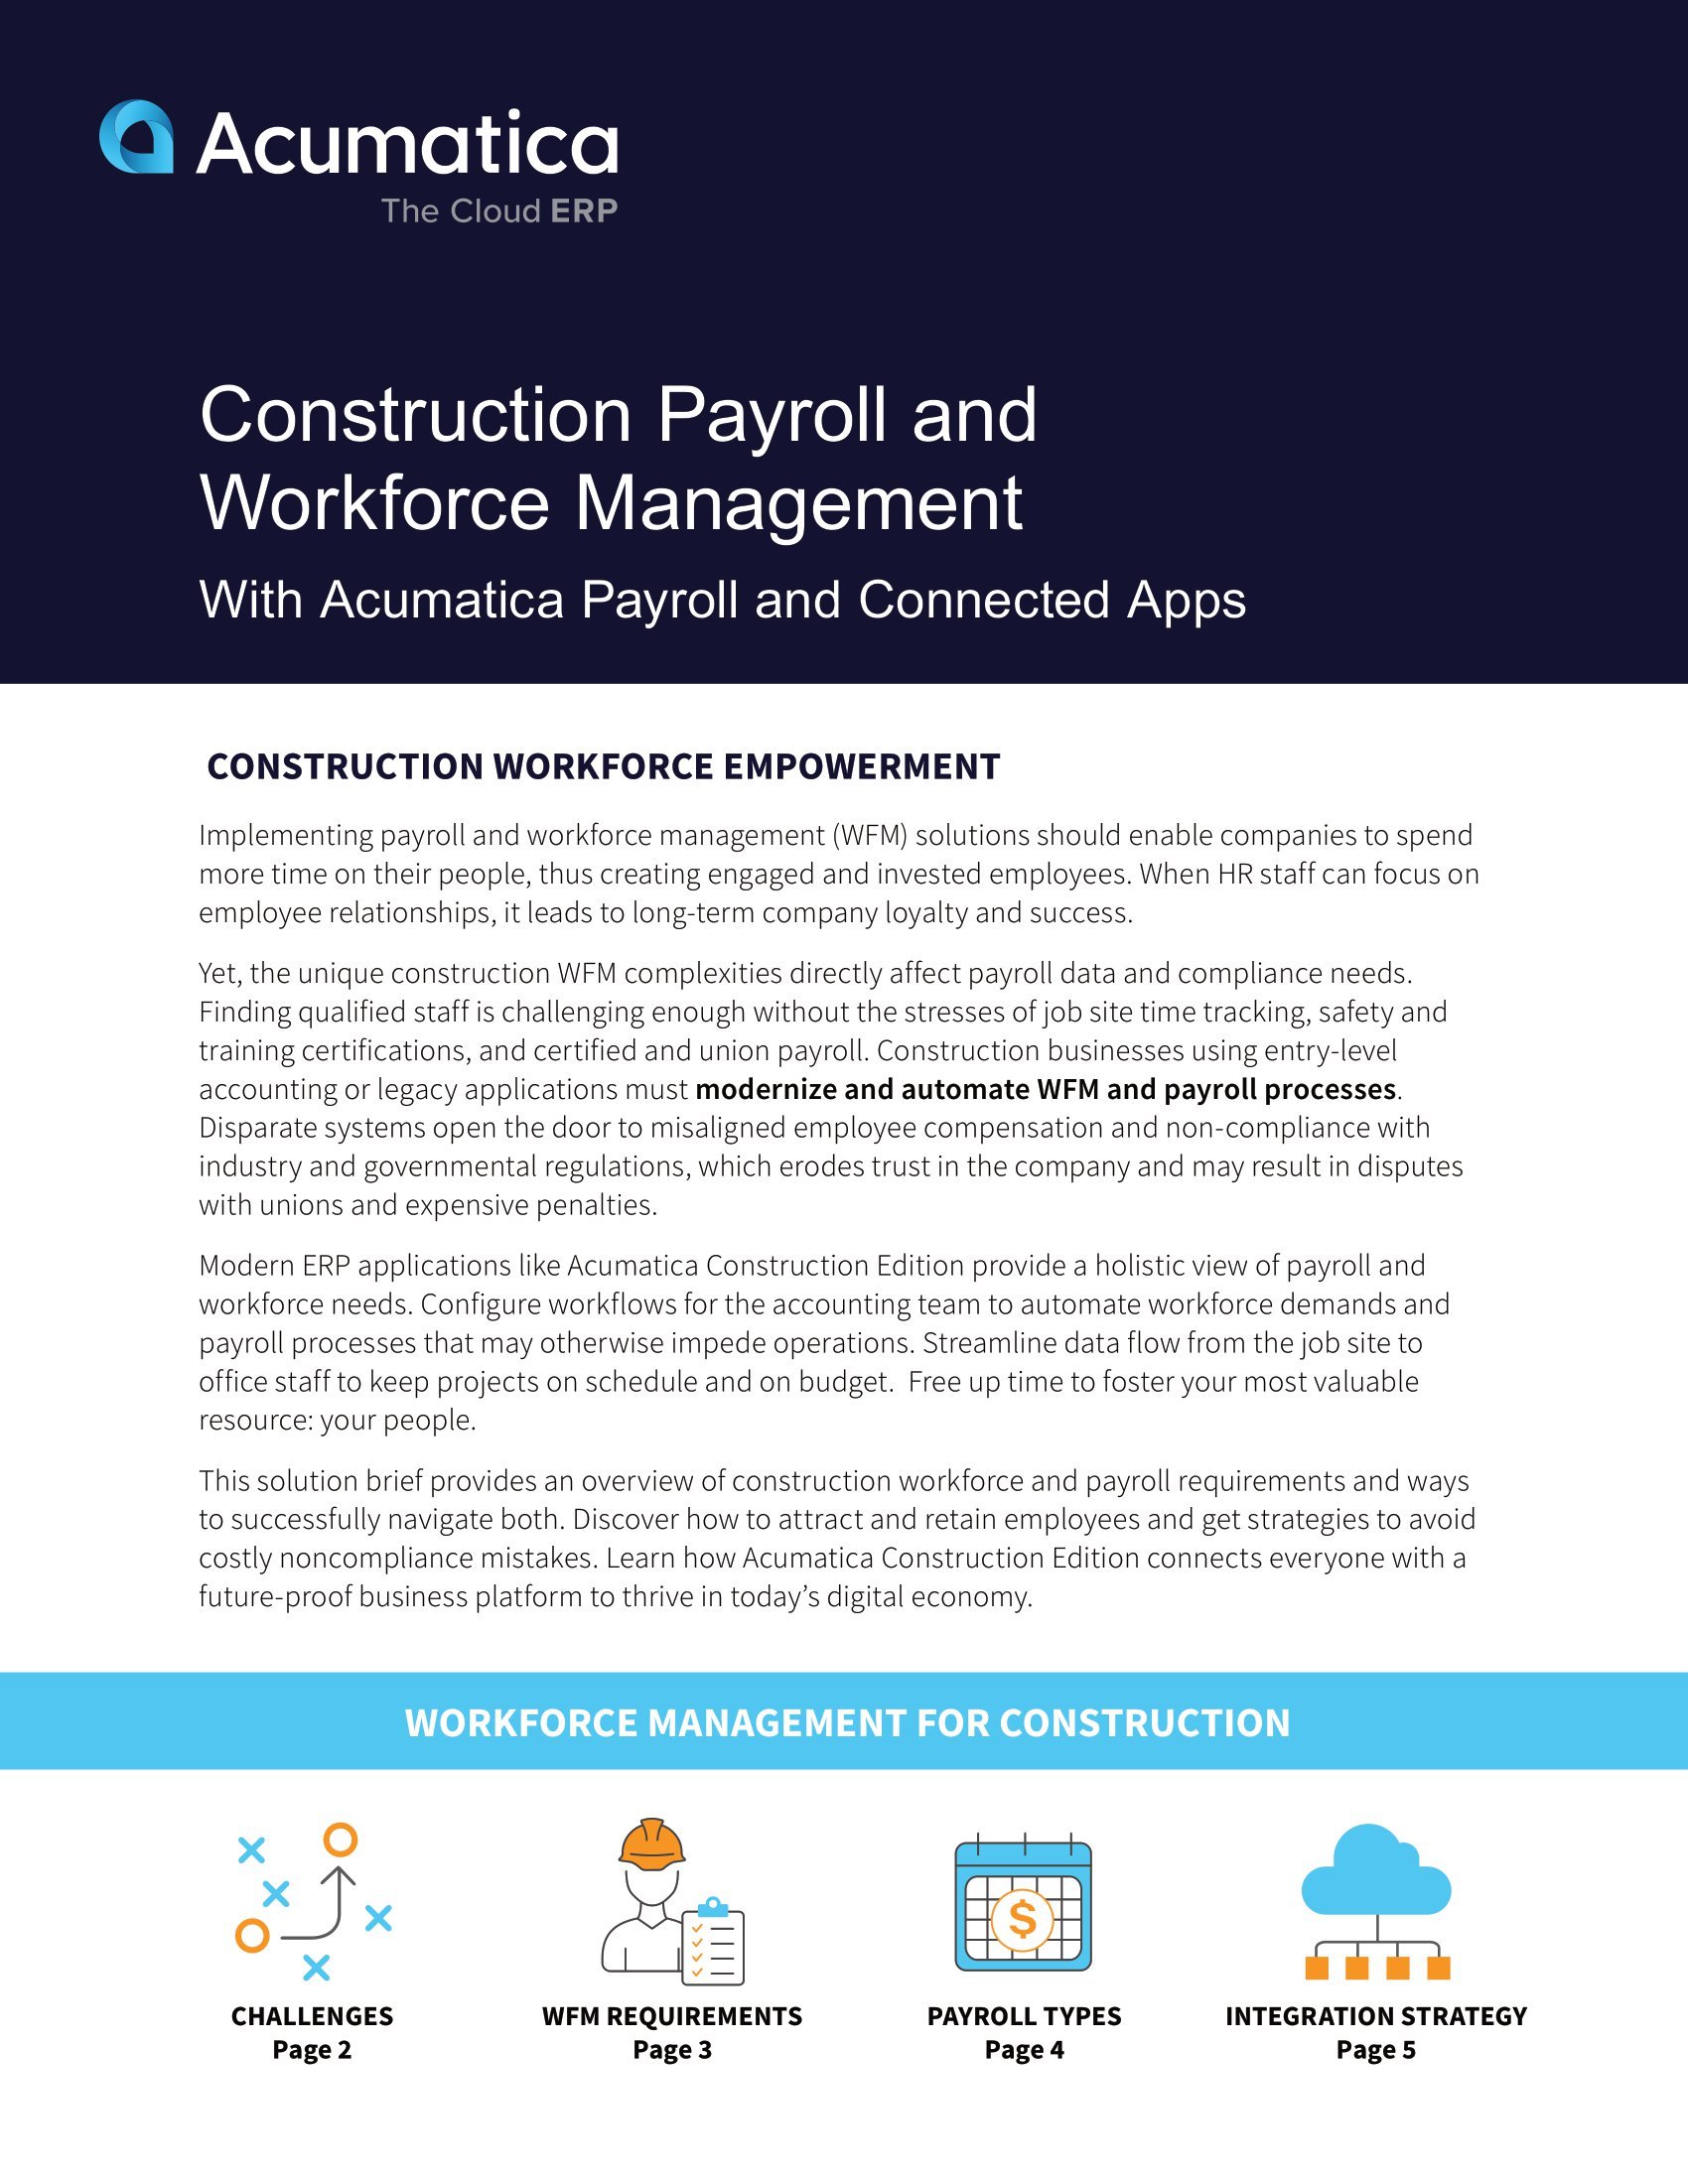 Comment Acumatica Construction Edition aide les entreprises de construction à surmonter les défis courants liés à la main-d’œuvre et à la paie